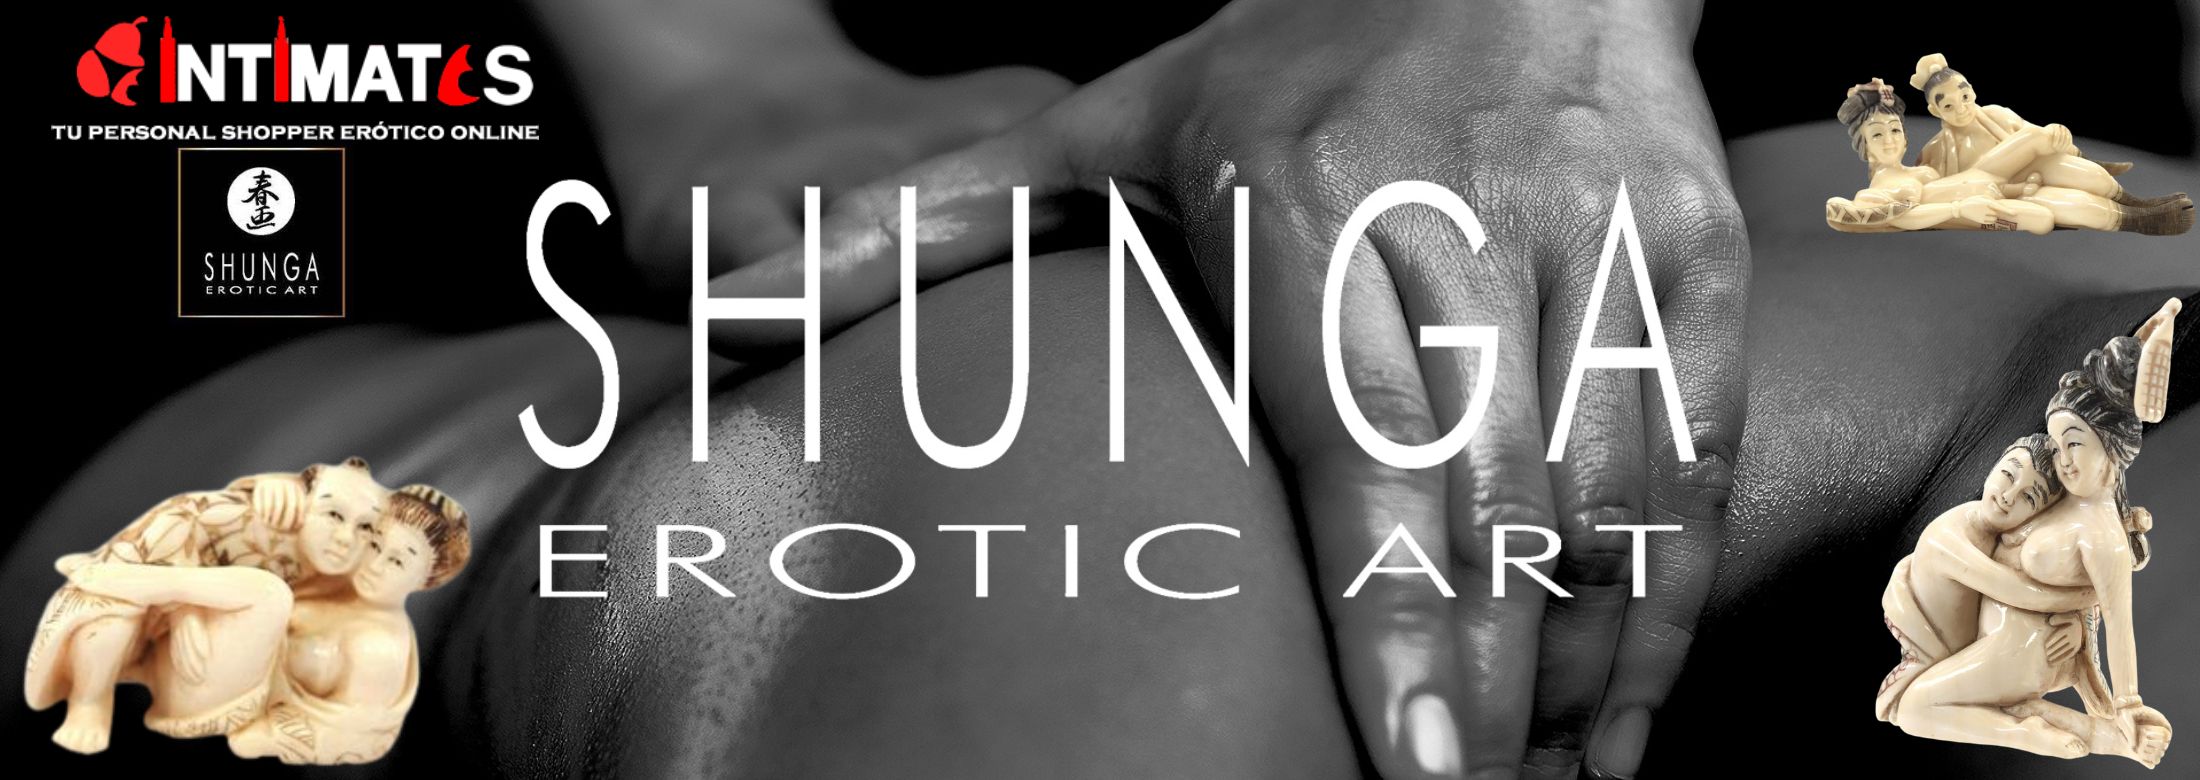 Shunga es líder mundial en cosmética erótica, que puedes adquirir en intimates.es "Tu Personal Shopper Erótico"